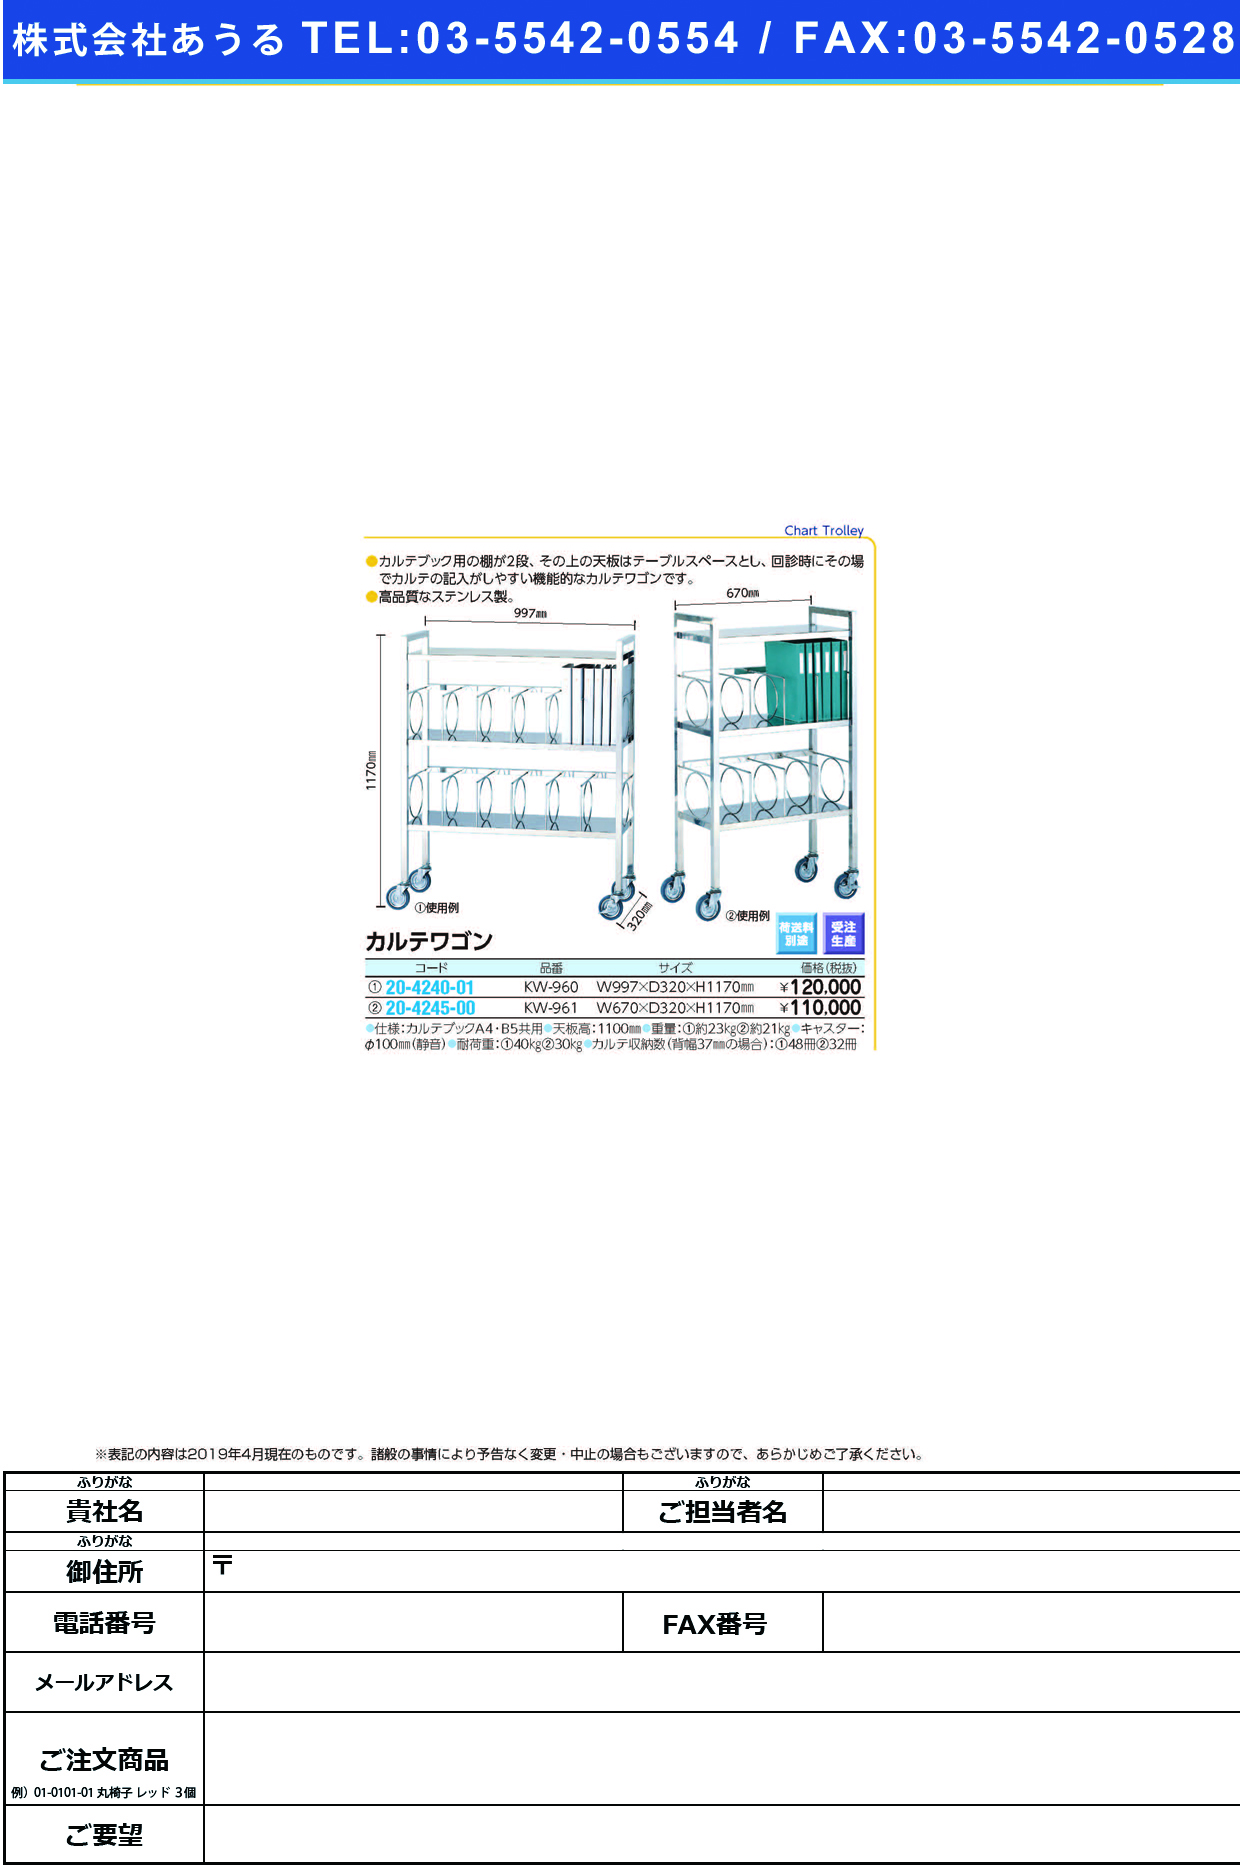 (20-4245-00)カルテワゴン KW-961 ｶﾙﾃﾜｺﾞﾝ(ケルン)【1台単位】【2019年カタログ商品】